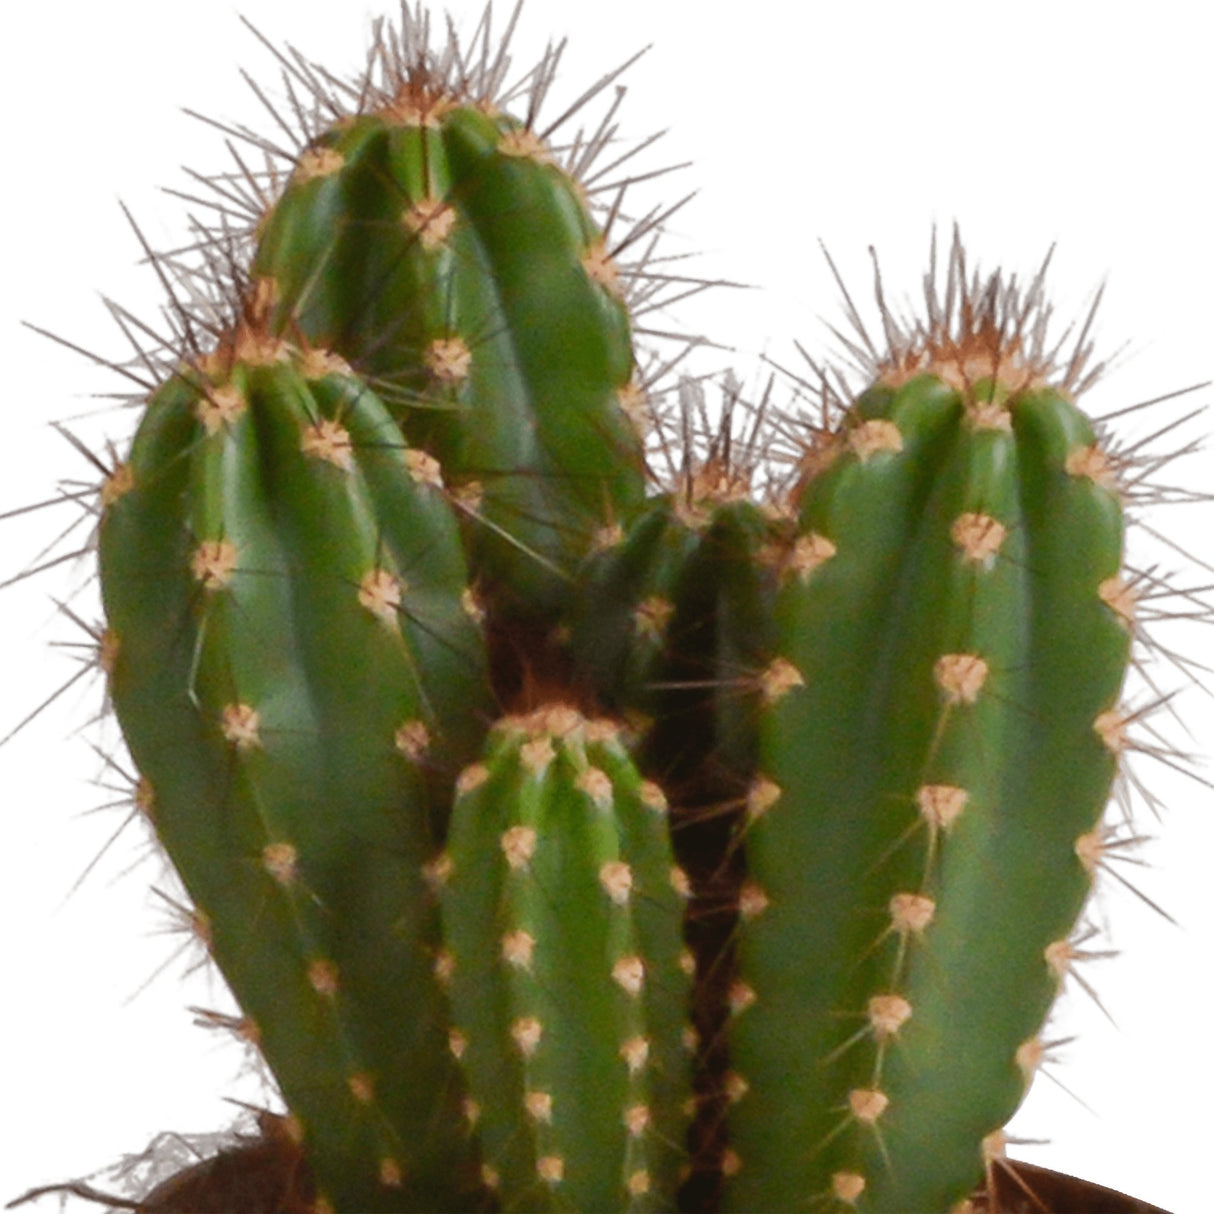 Livraison plante Coffret cactus - Lot de 3 plantes, h23cm